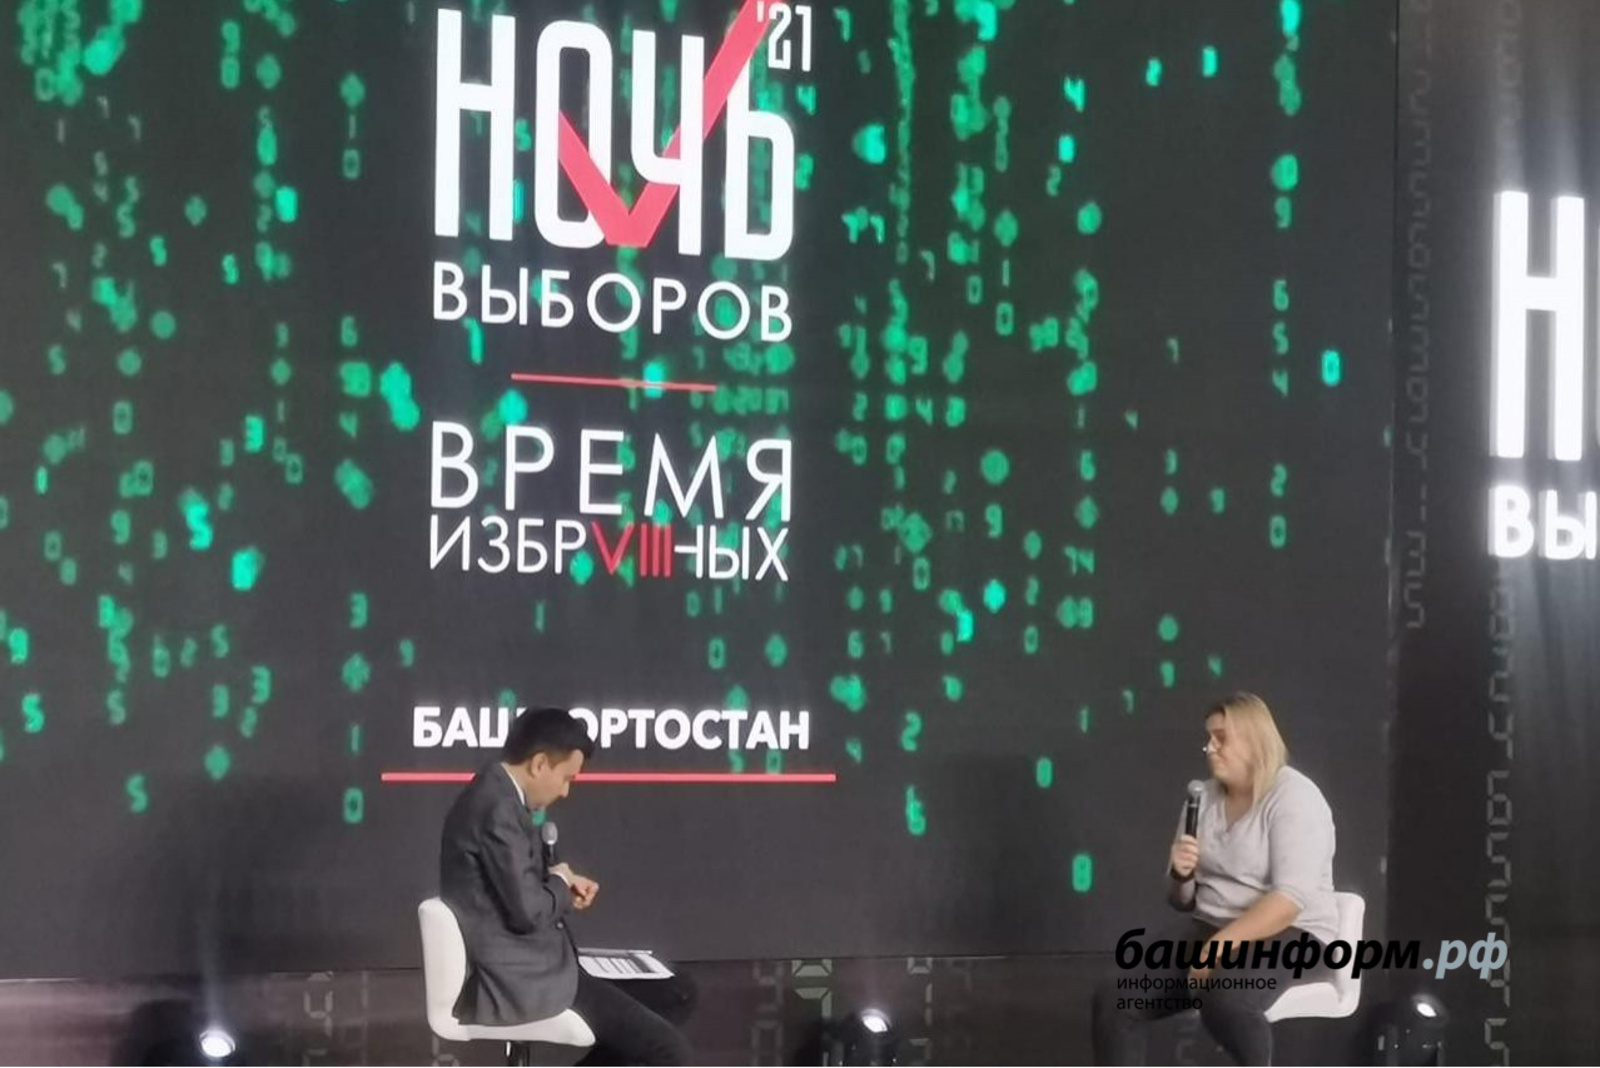 Оксана Савченко: «Трехдневное голосование - это огромный плюс для людей»